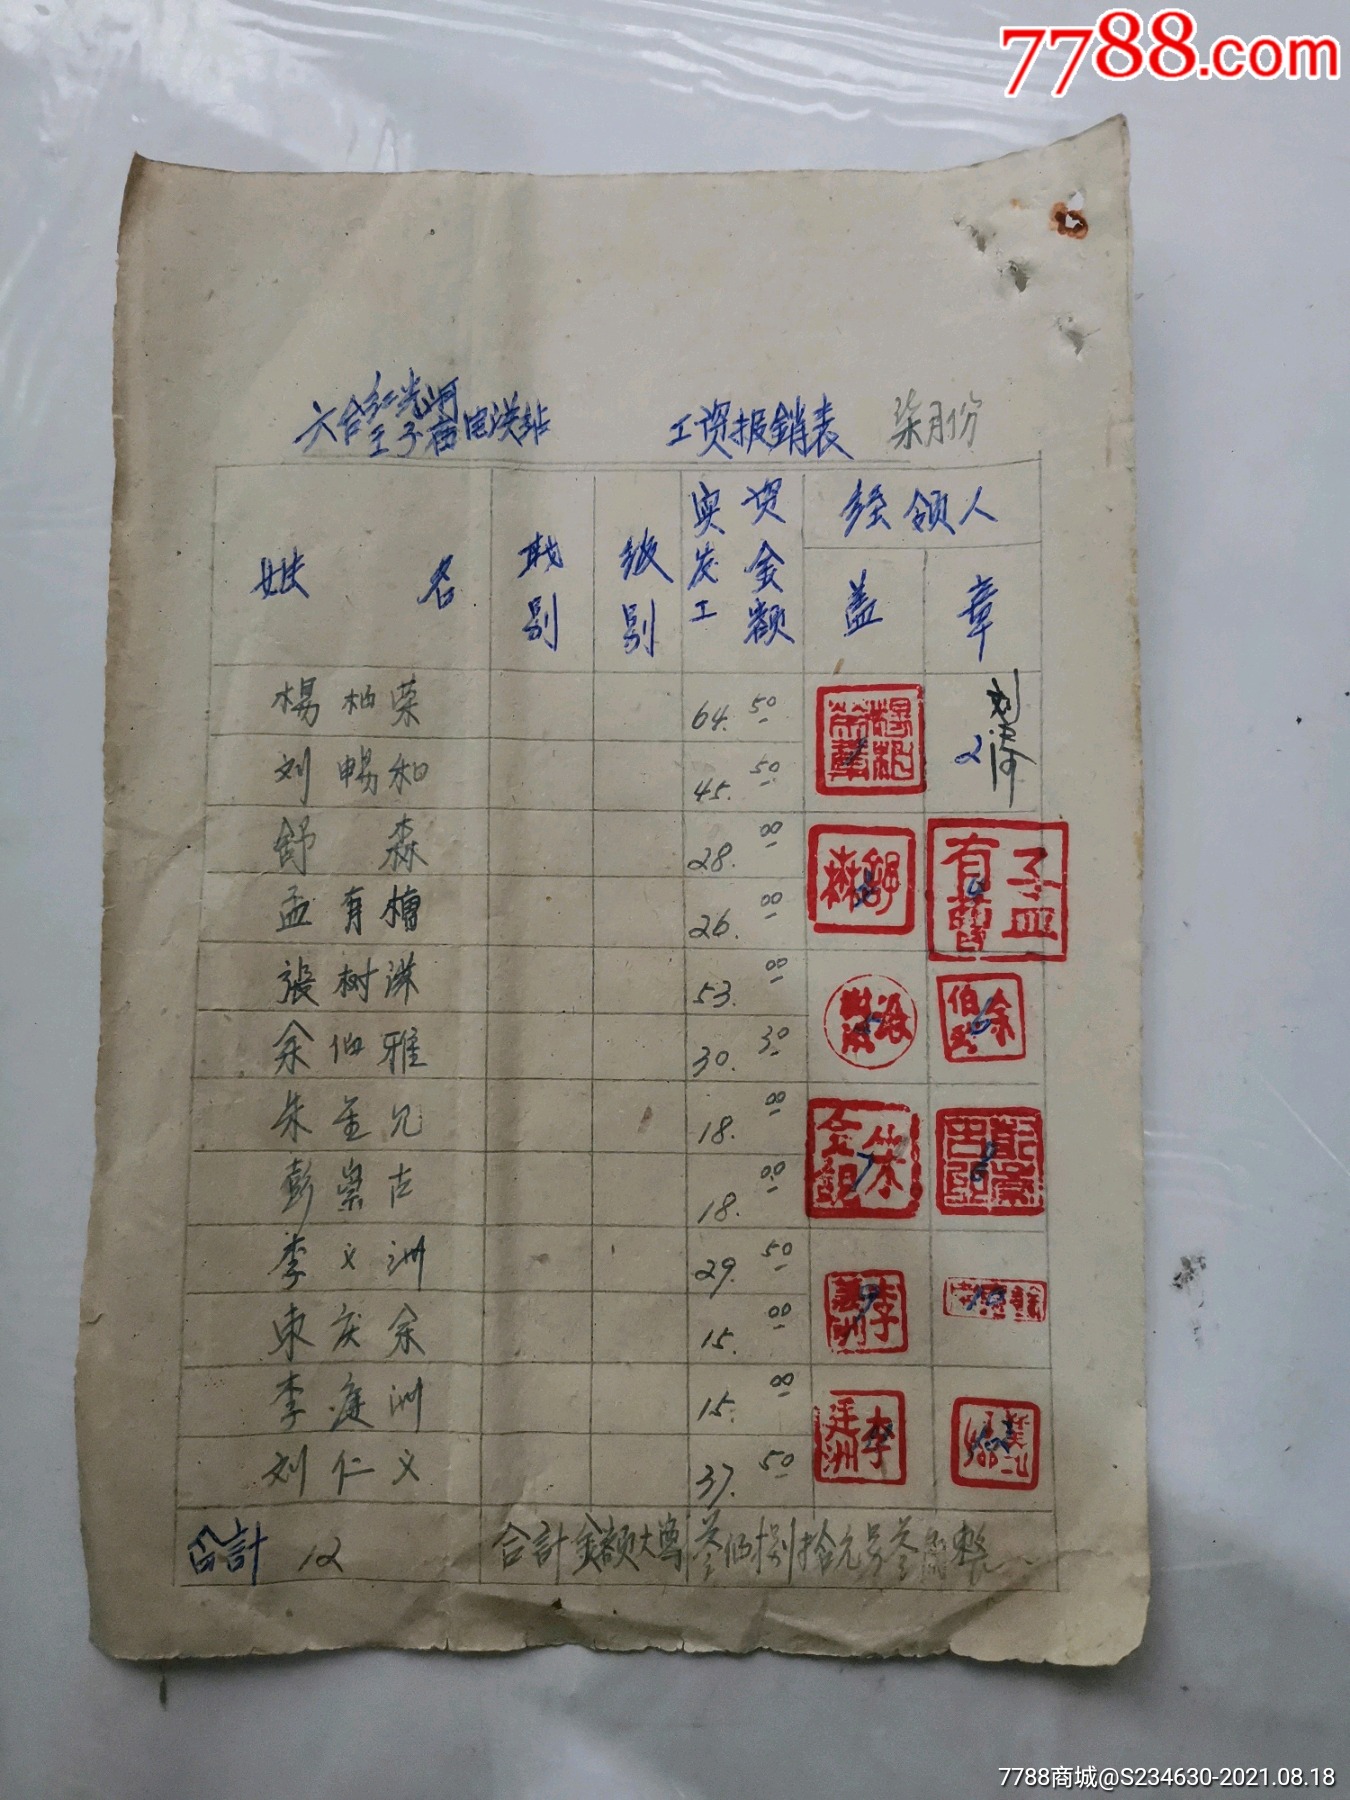 1963年六合红光河王子庙电罐站七月份工资表